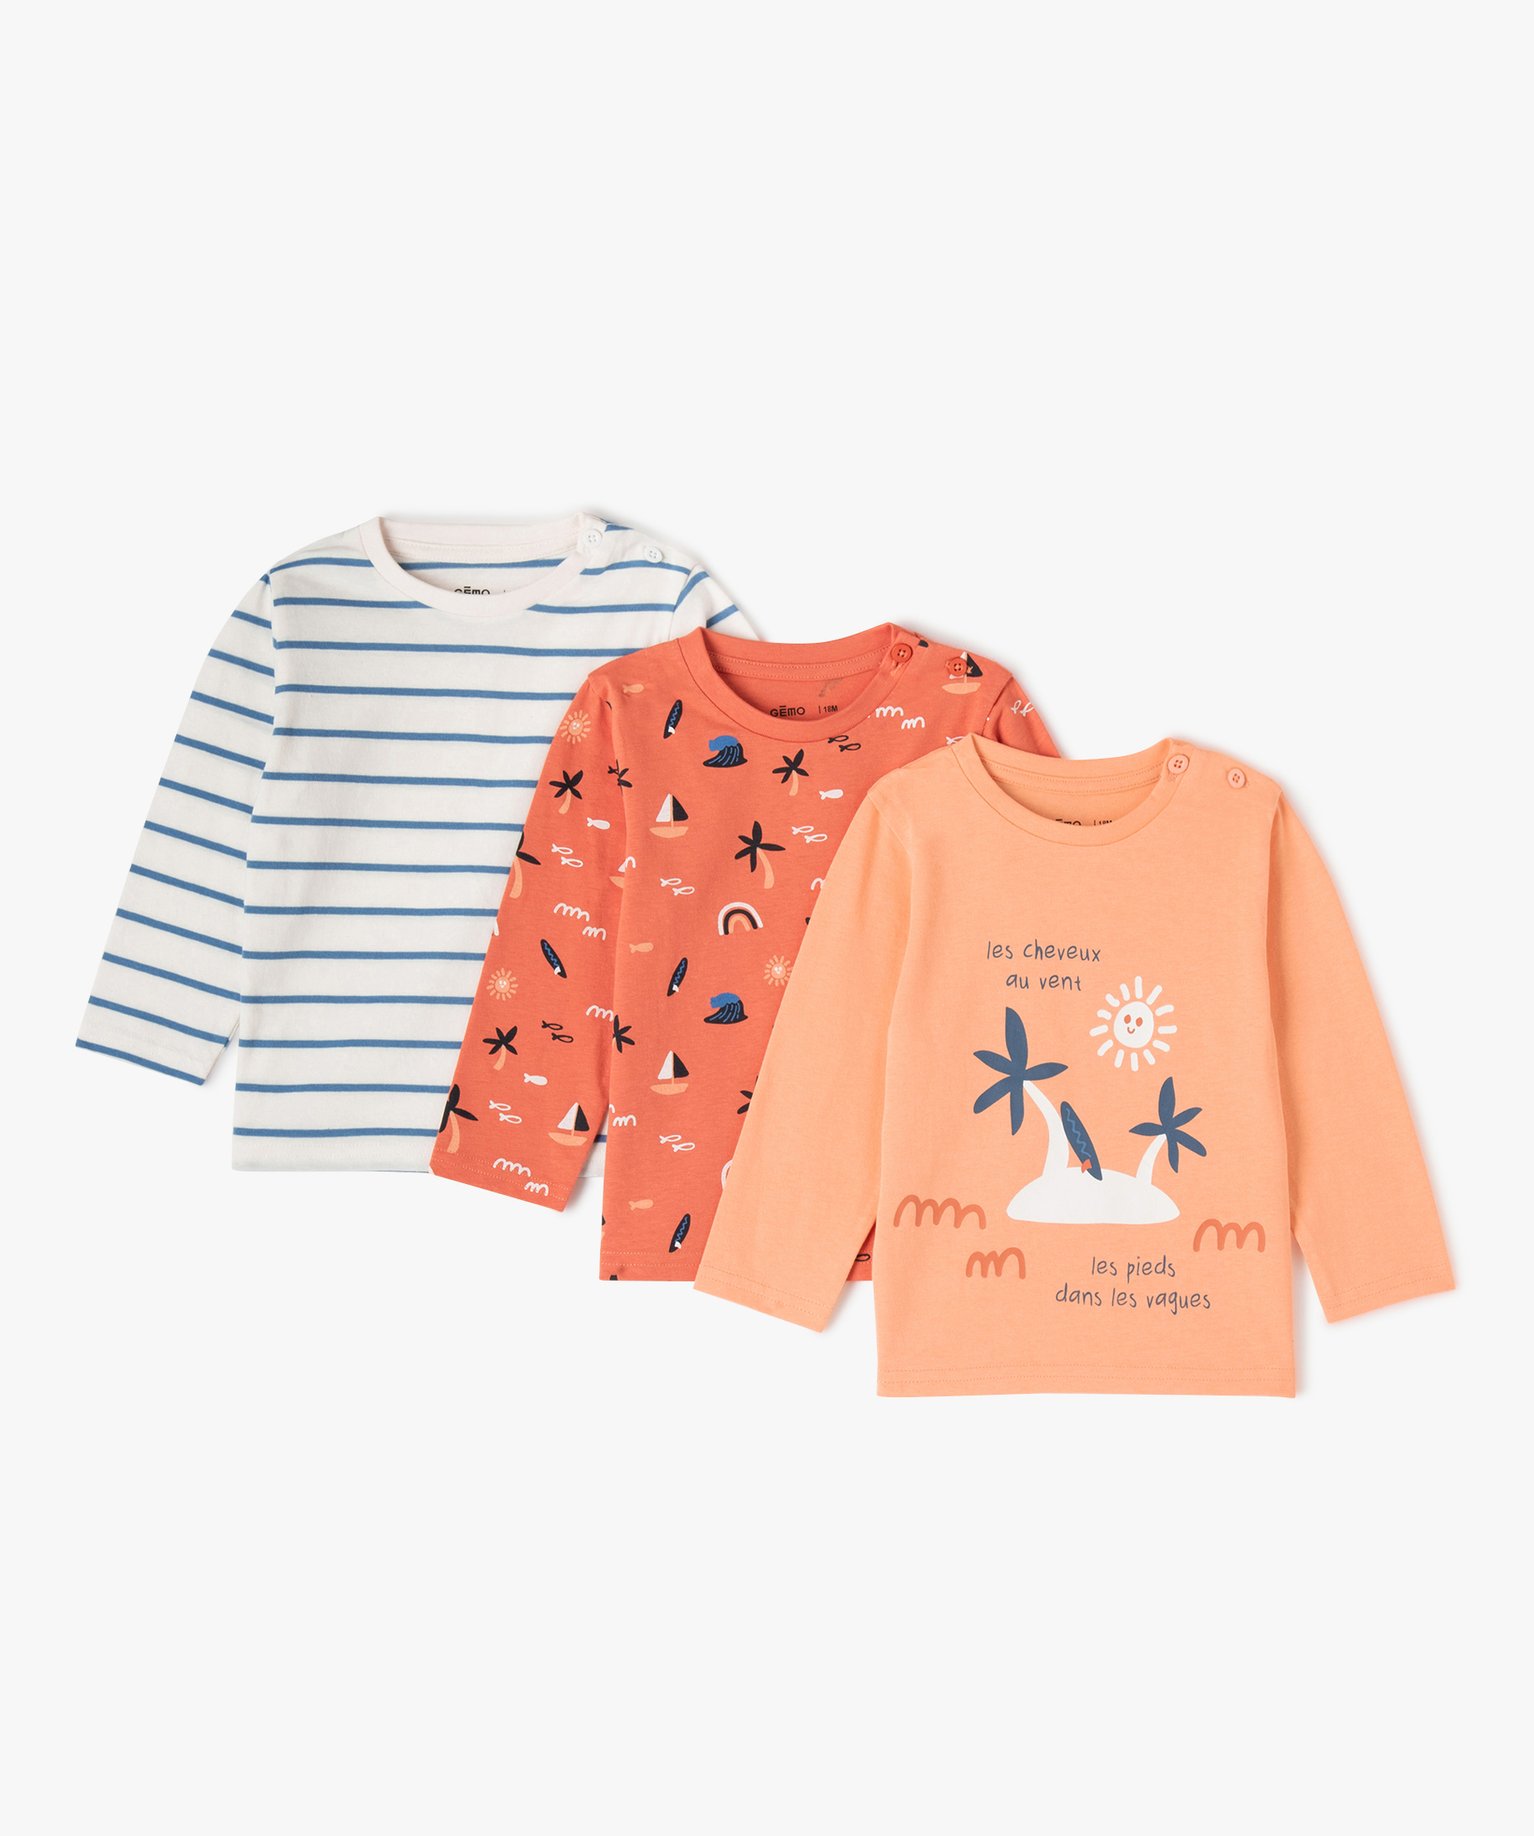 Tee-shirt bébé garçon à manches longues (lot de 3) - 12M - orange - GEMO